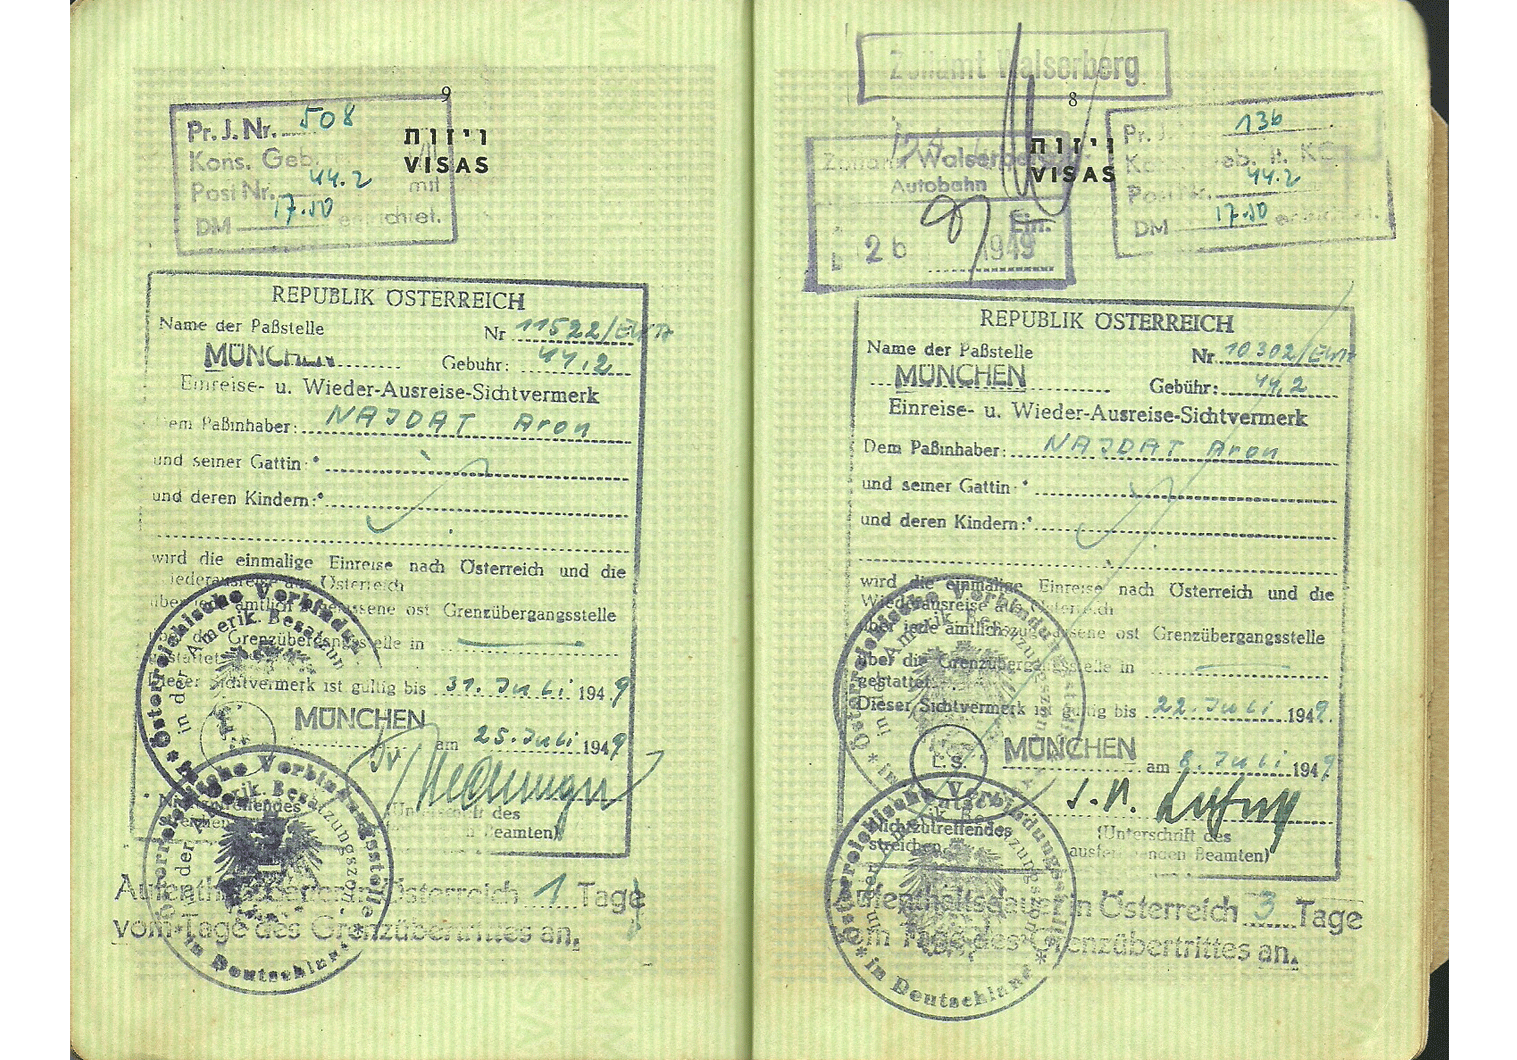 AMG visa 1949